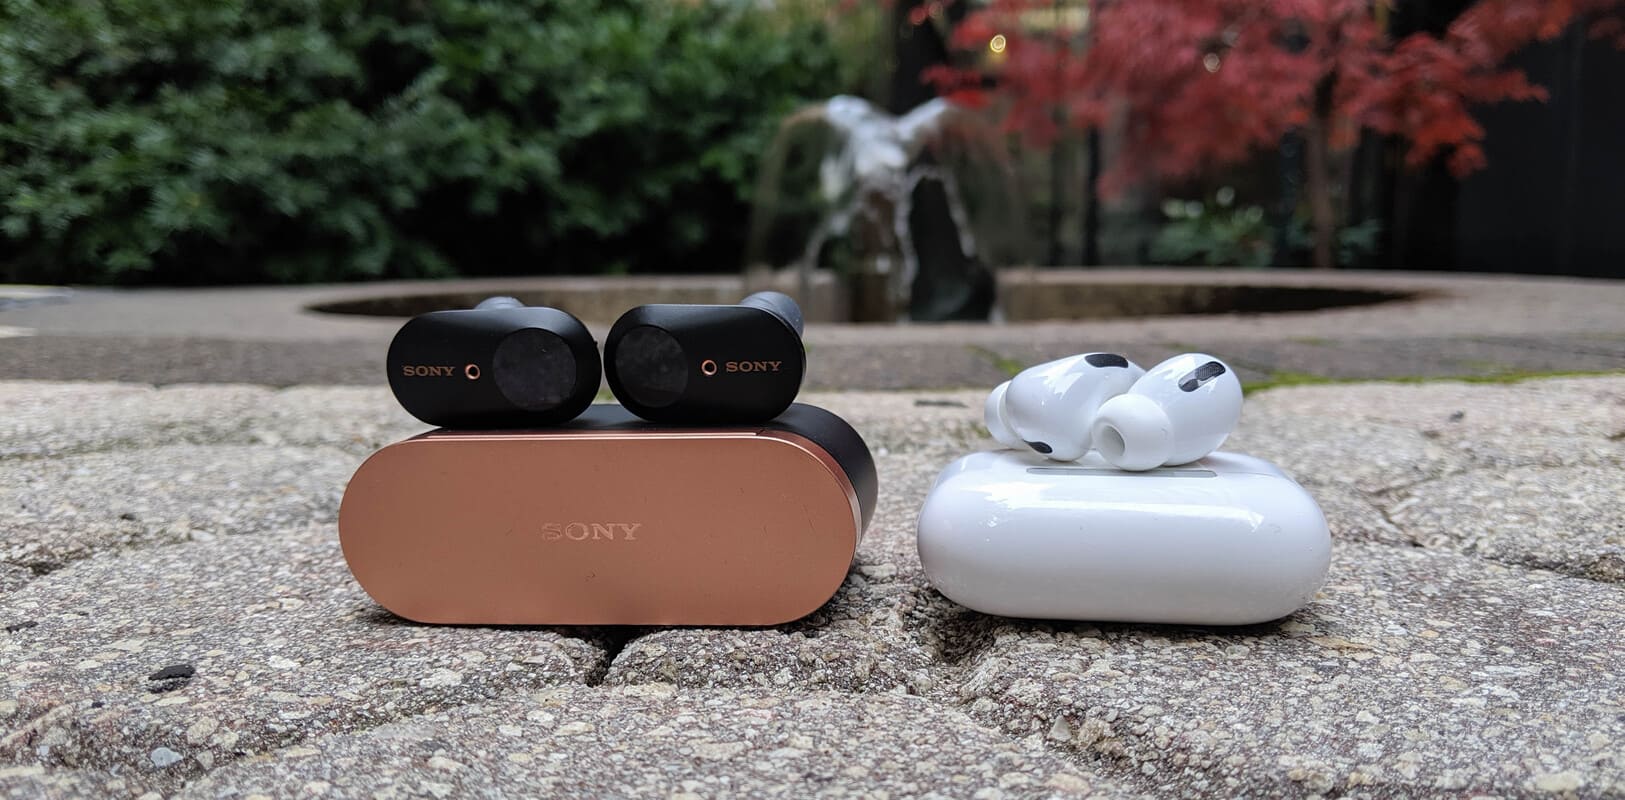 Apple AirPods Pro εναντίον Sony WF-1000XM3: Ποιο είναι καλύτερο και ποια ασύρματα ακουστικά να αγοράσετε; Κριτικές από το myheadphone.desigusxpro.com/el/